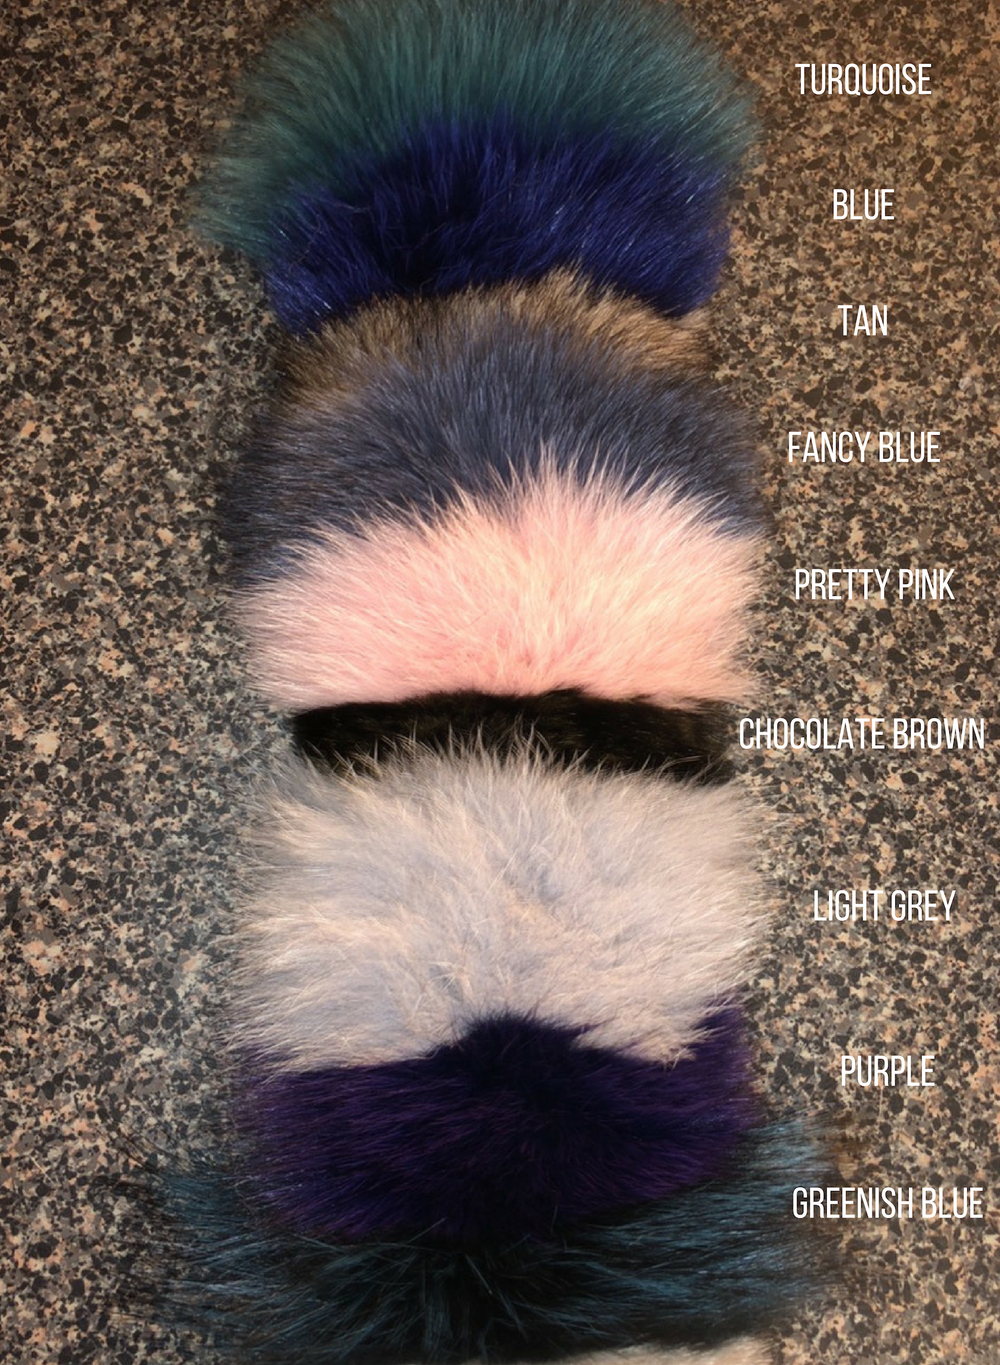 Customize Color: Gina Fox Fur Vest